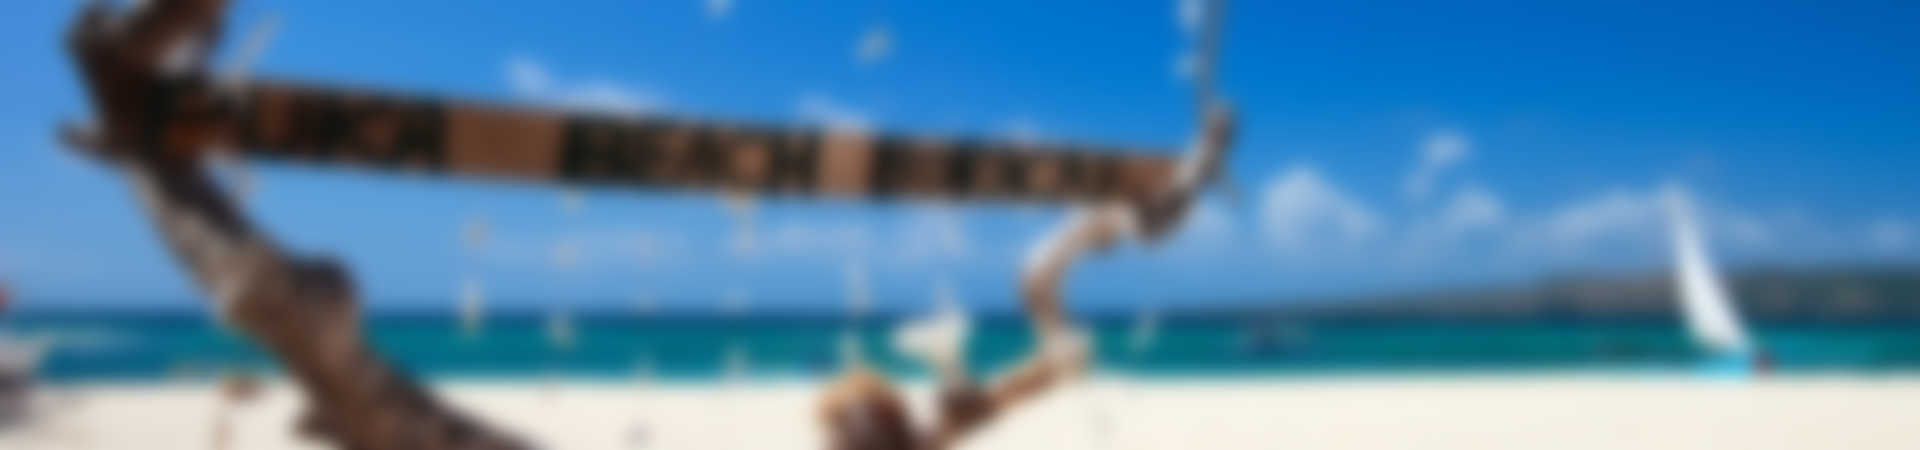 playa oceano cartel barco tarifa verano vacaciones